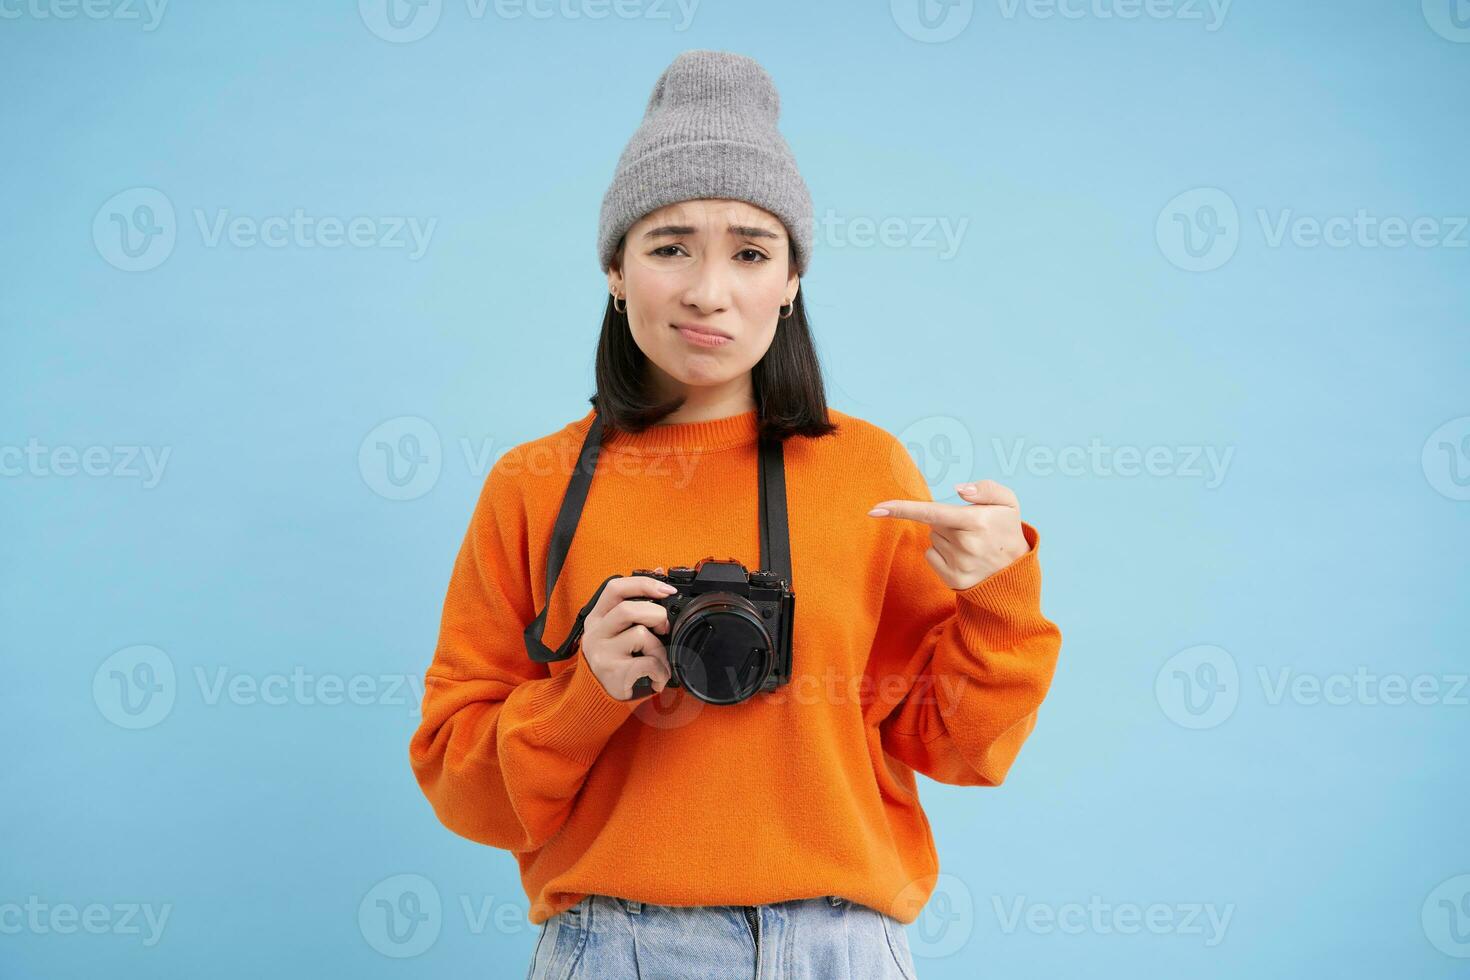 asiatisch Mädchen im Hut, Punkte beim ihr Digital Kamera mit enttäuscht, verärgert Gesicht, nicht mögen ihr Gerät, Fotograf beschwert sich beim ihr Digicam, Blau Hintergrund foto